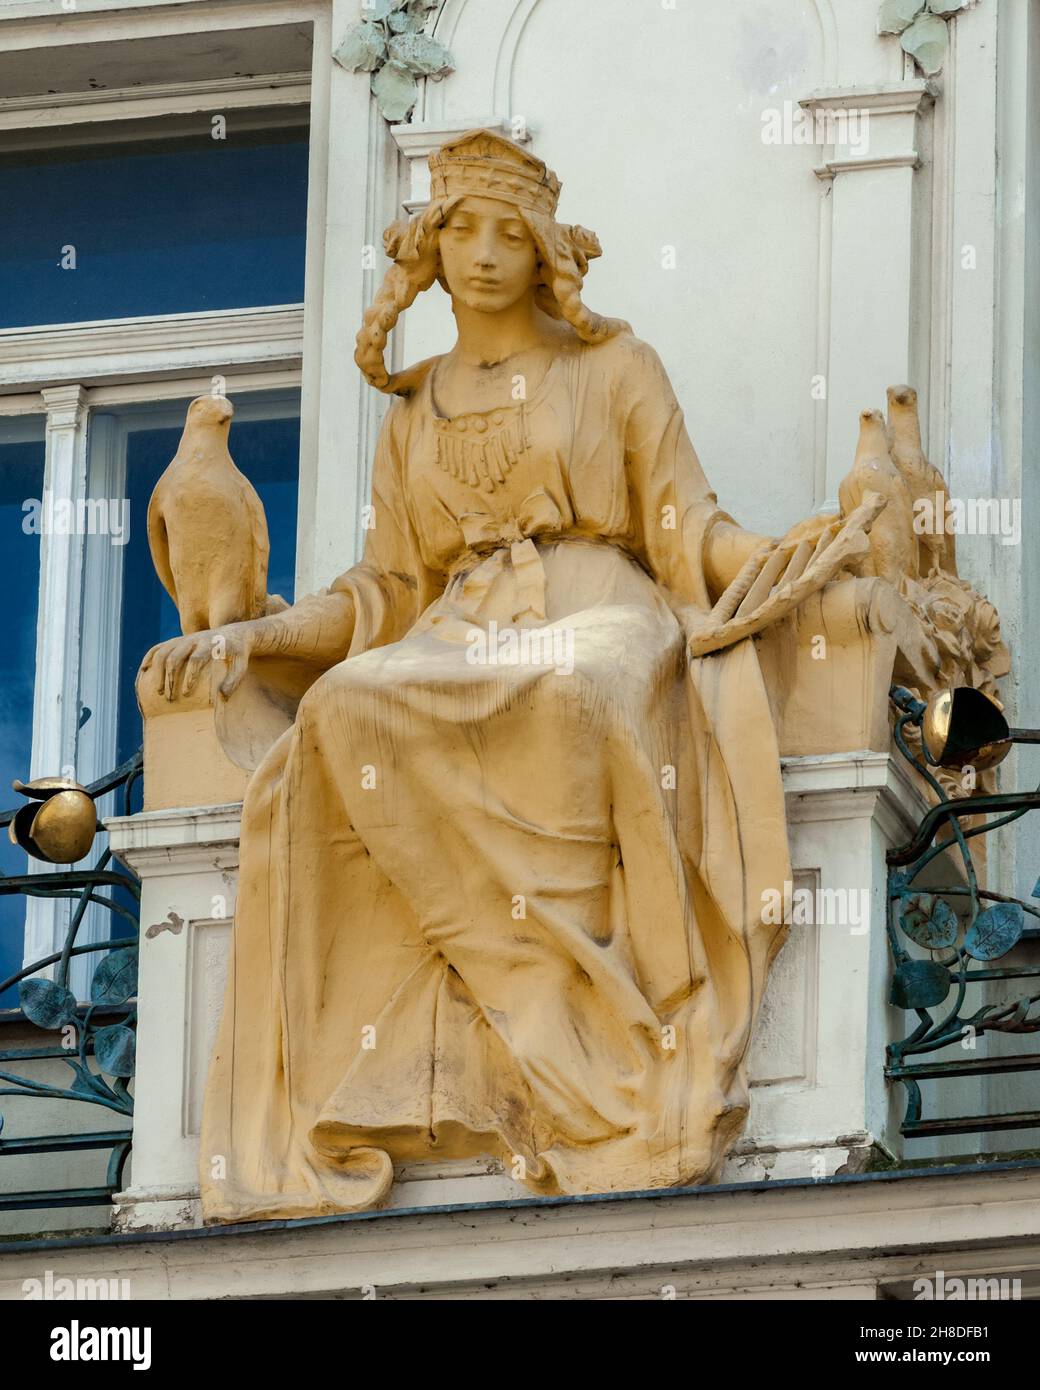 Une sculpture d'une fille avec une harpe et des colombes se trouve sur le balcon de la façade Art Nouveau d'Osvald Polívka, au 178 rue Karlova, dans la vieille ville de Prague. Banque D'Images